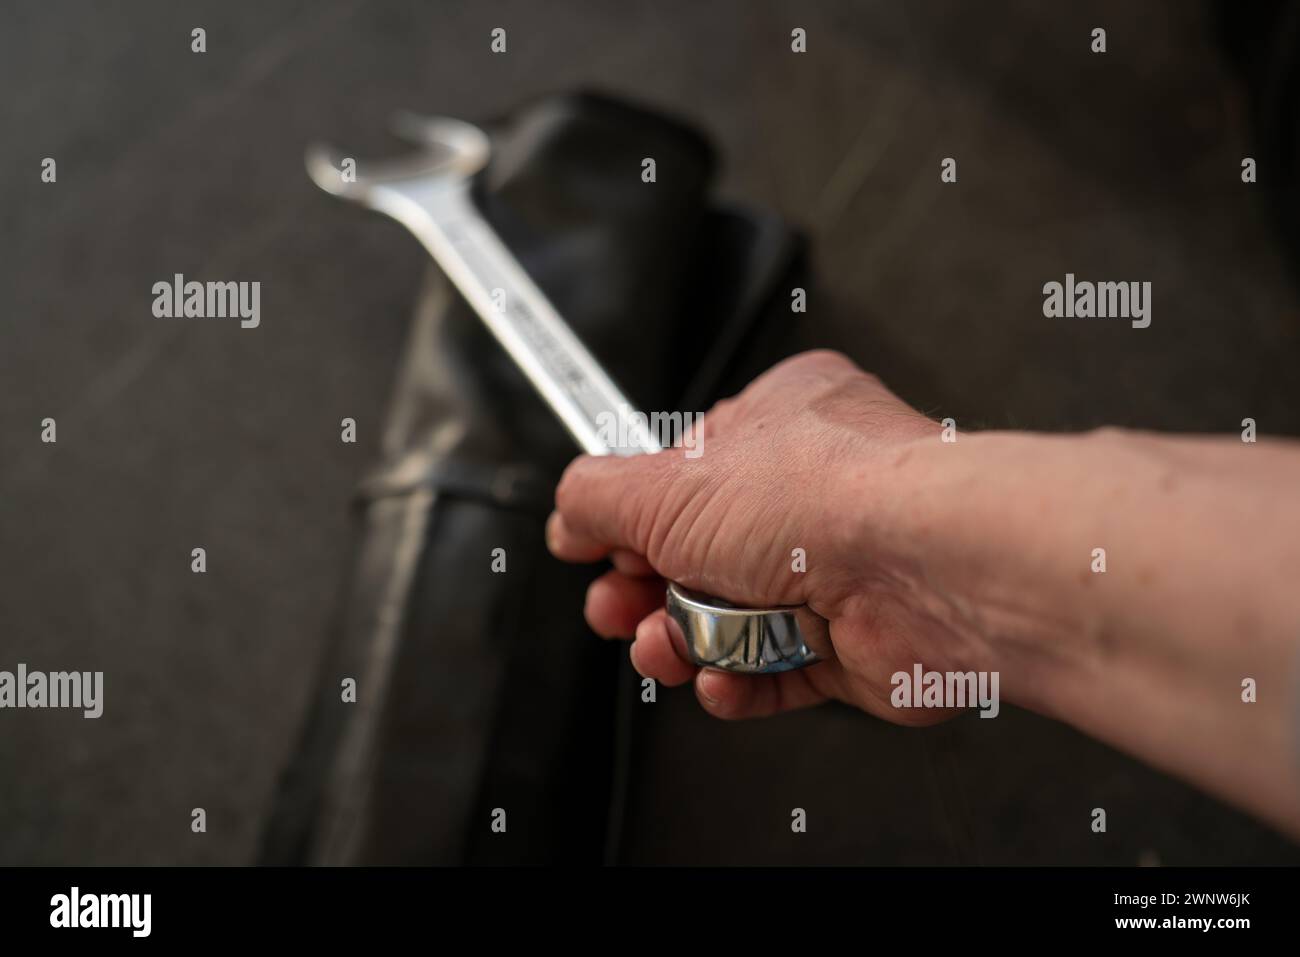 Arm, der einen großen Schraubenschlüssel hält, Schlüsselsack auf dem Tisch liegt. Schwenken Sie einen Schraubenschlüssel in diagonaler Position, geringe Schärfentiefe, nur handscharf, Ende des Werkzeugs unscharf. Stockfoto